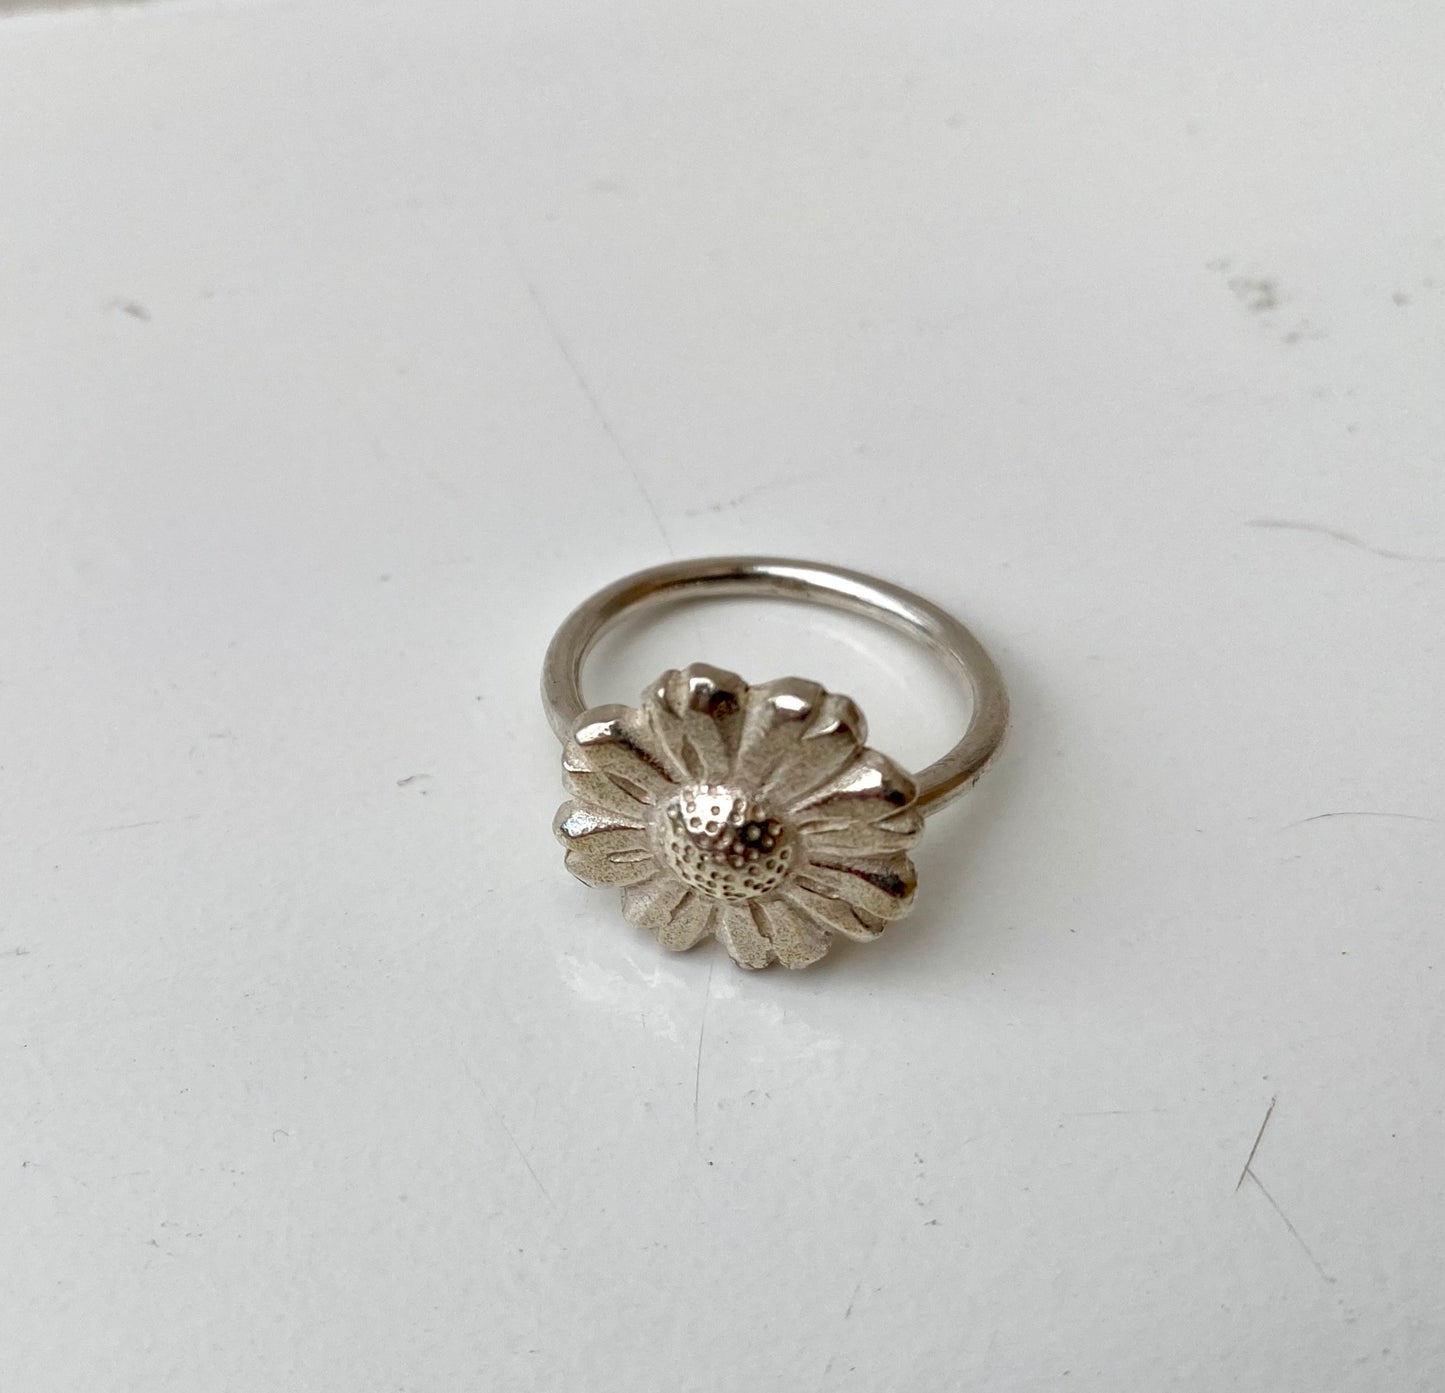 Daisy Flower Ring